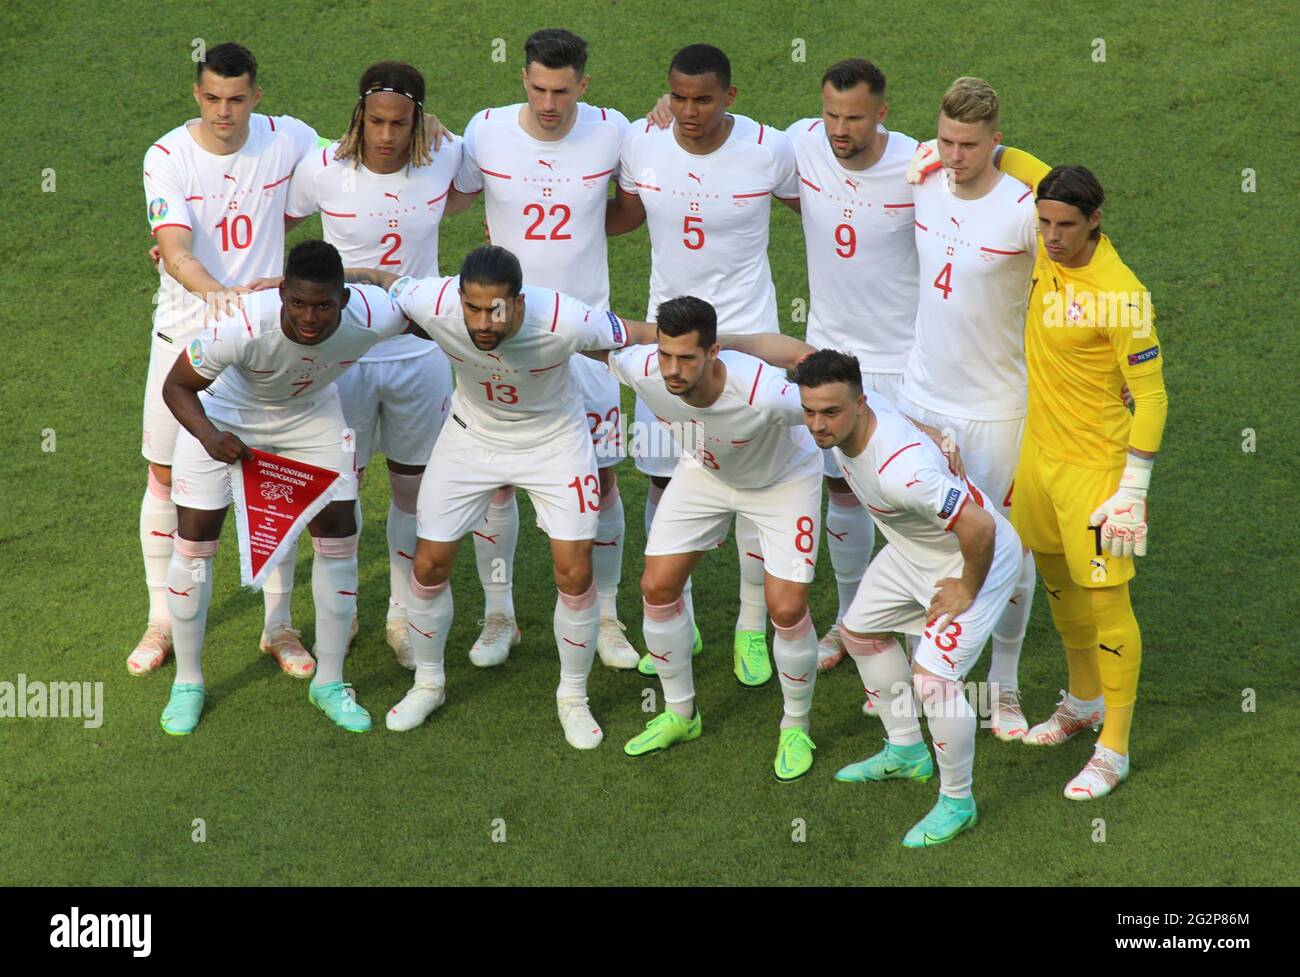 I giocatori della Svizzera si allineano prima della partita UEFA Euro 2020 allo Stadio Olimpico di Baku, Azerbaigian. Data immagine: Sabato 12 giugno 2021. Foto Stock